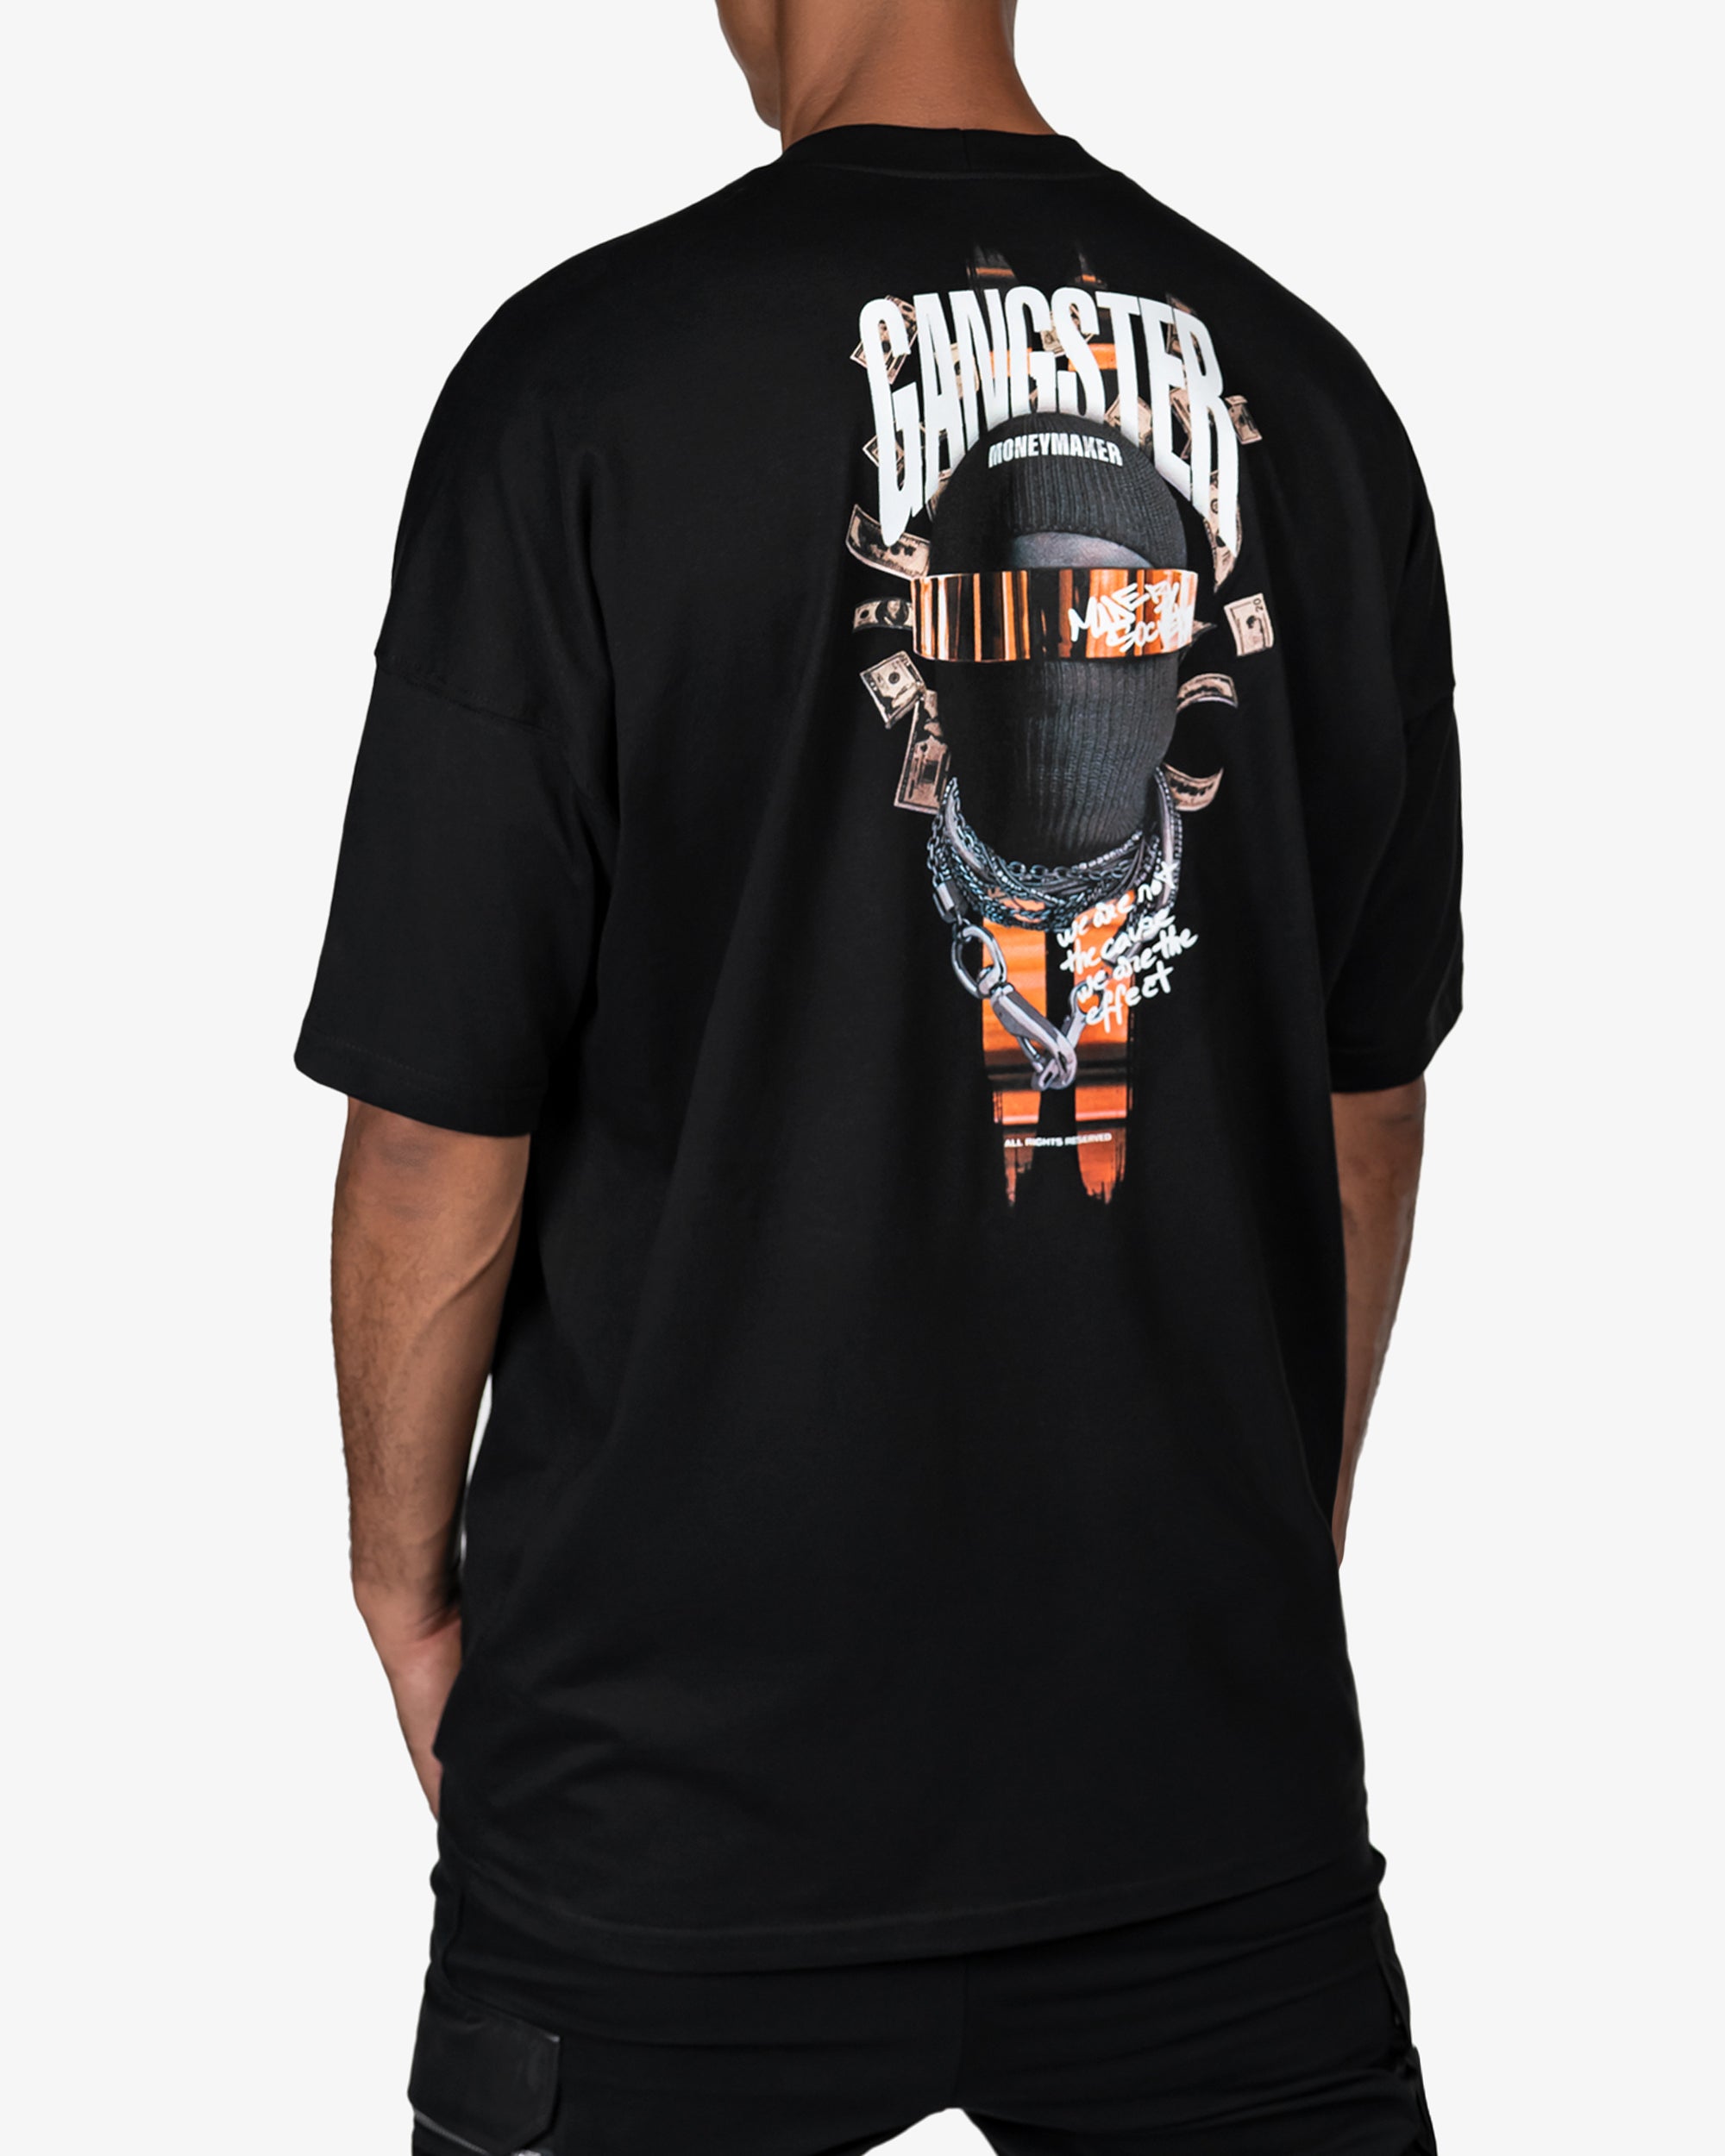 Gangster t-shirt - T14748